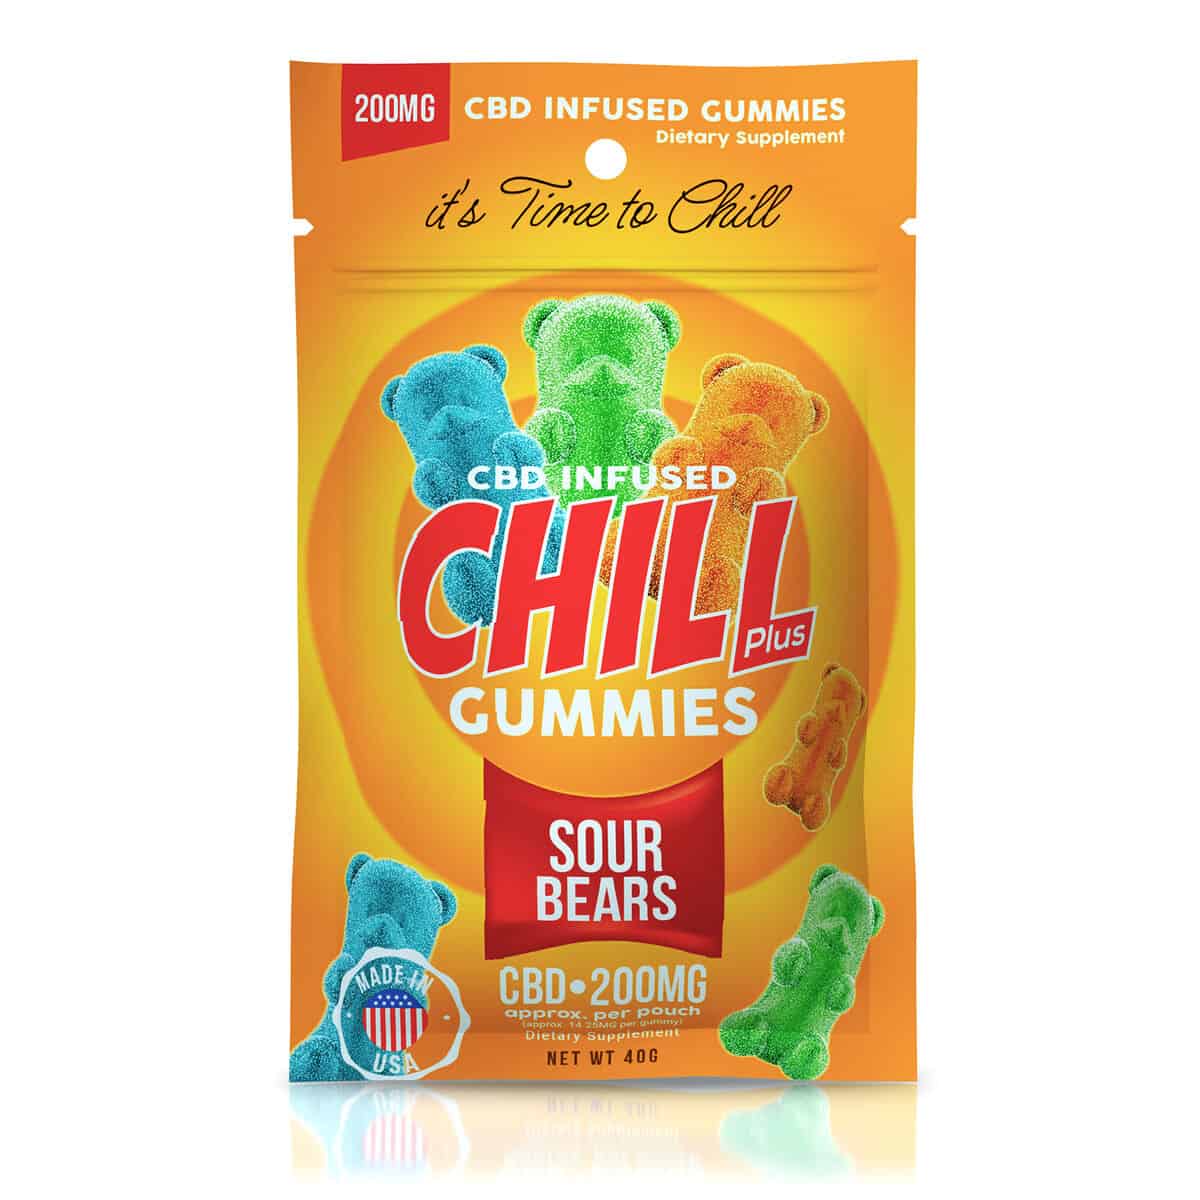 Our #1 Choice - Best CBD Gummies for Sleep.